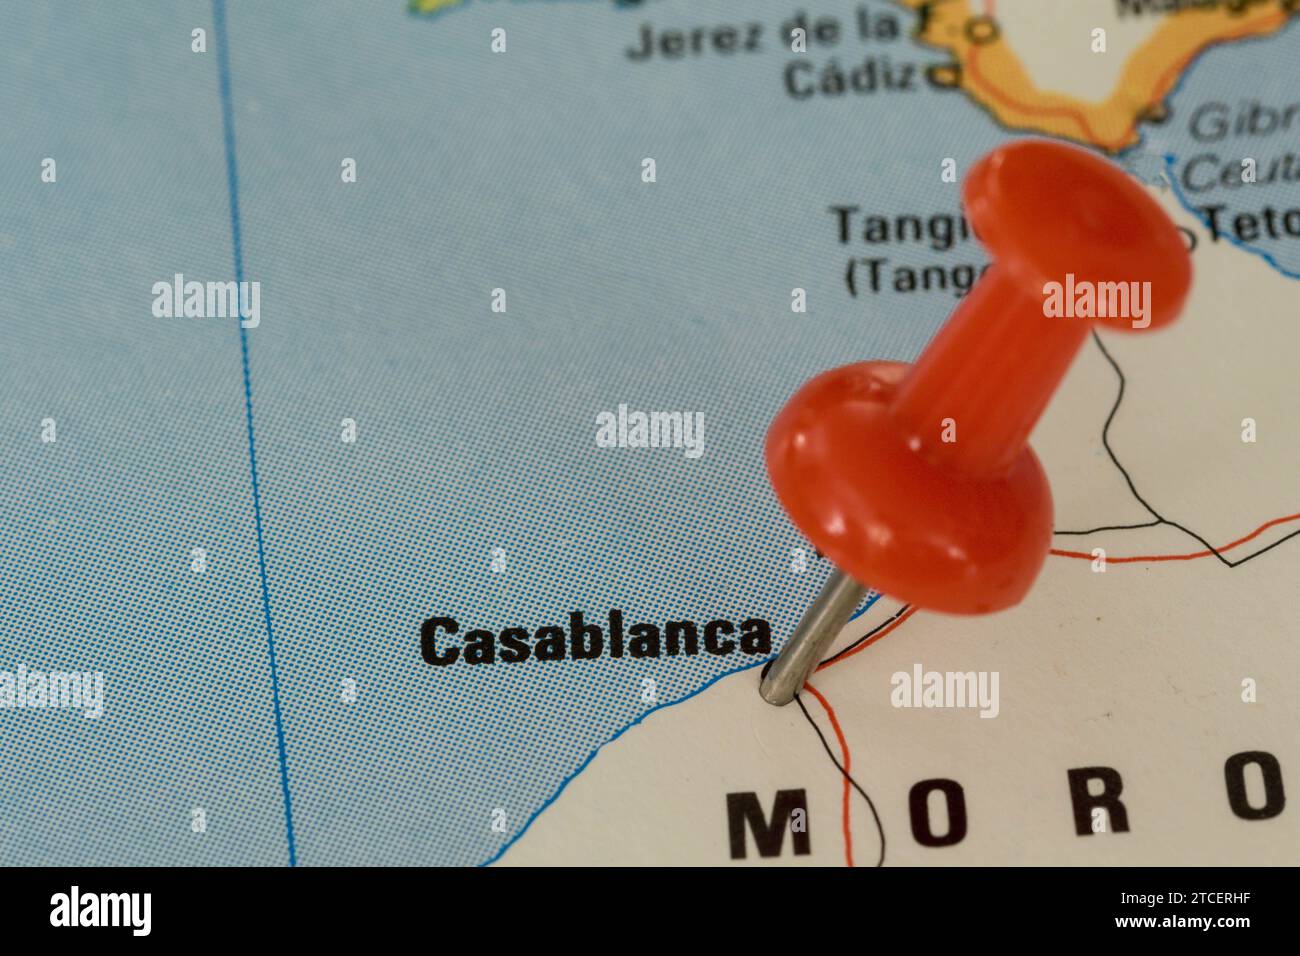 Eine rote Nadel, die in eine Karte Westeuropas gesteckt wurde, zeigt die Lage von Casablanca an Stockfoto